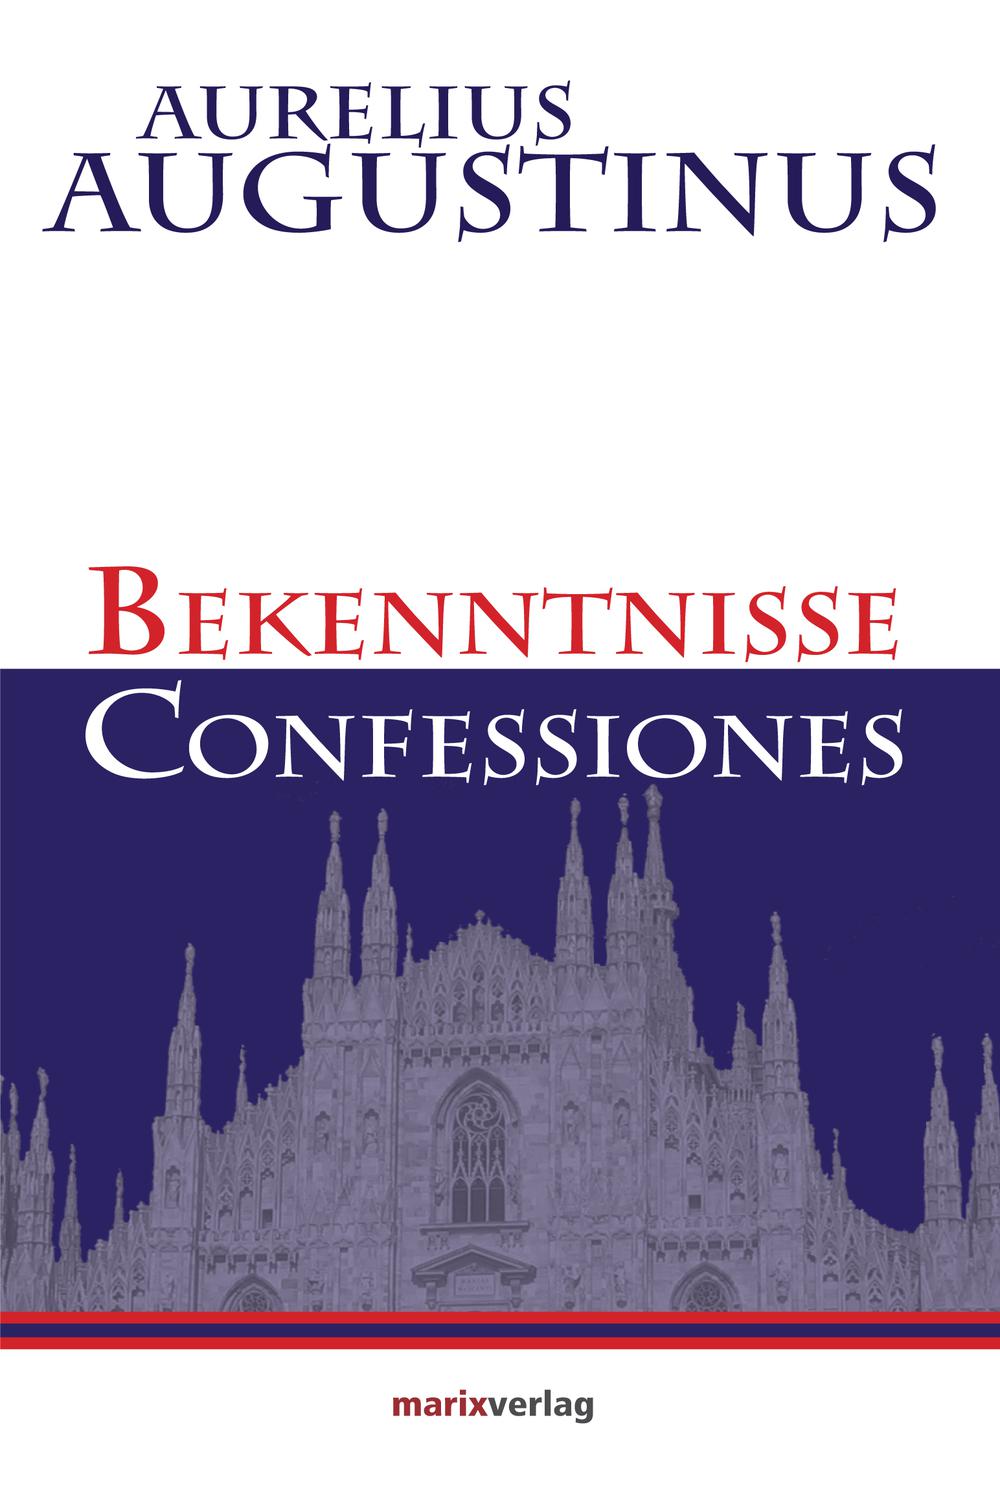 Bekenntnisse-Confessiones - Aurelius Augustinus